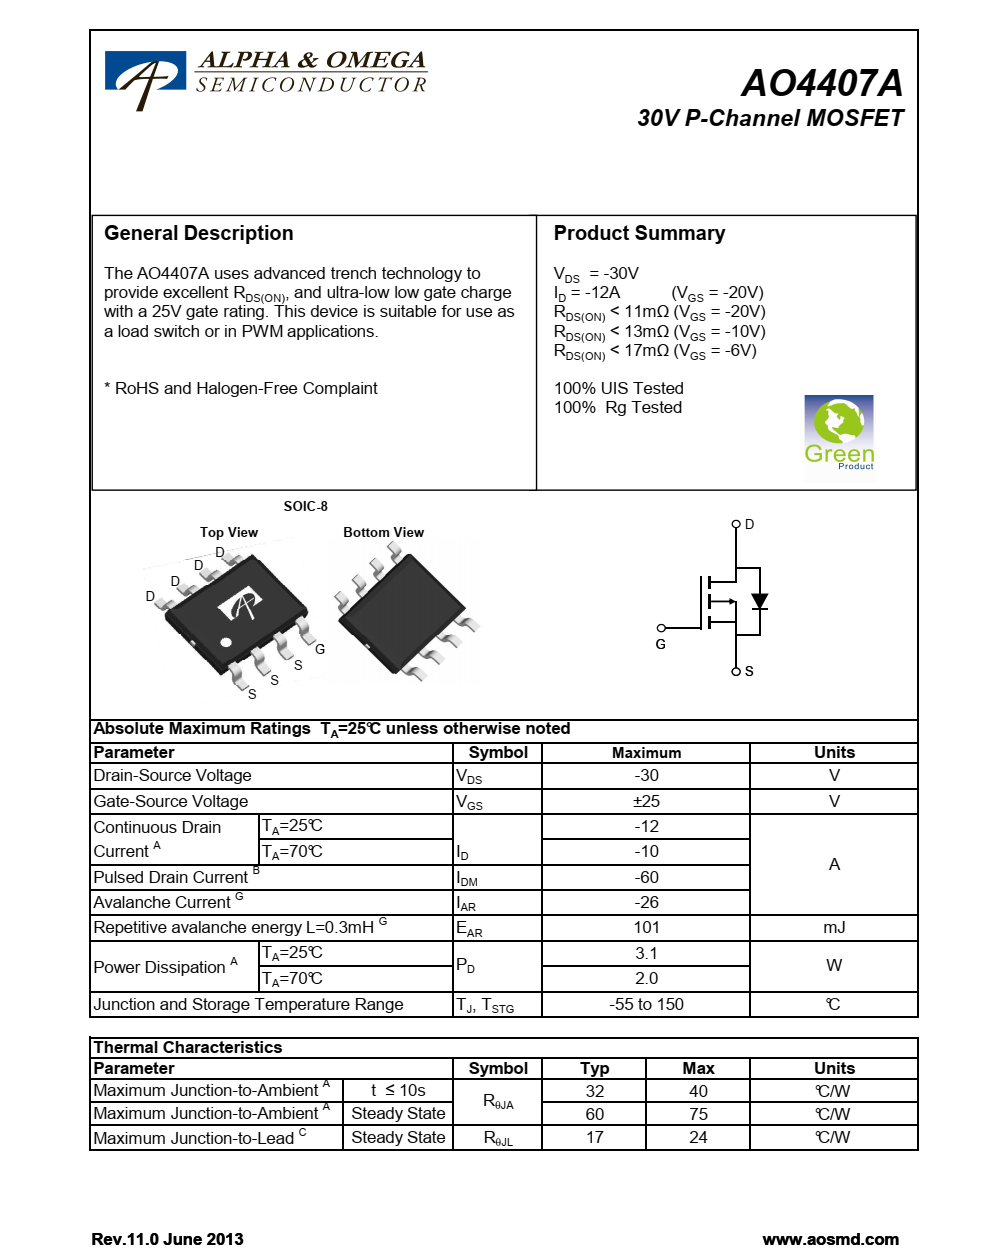 AO4407A采用先进的沟槽技术，提供出色的RDS（ON）和超低栅极电荷